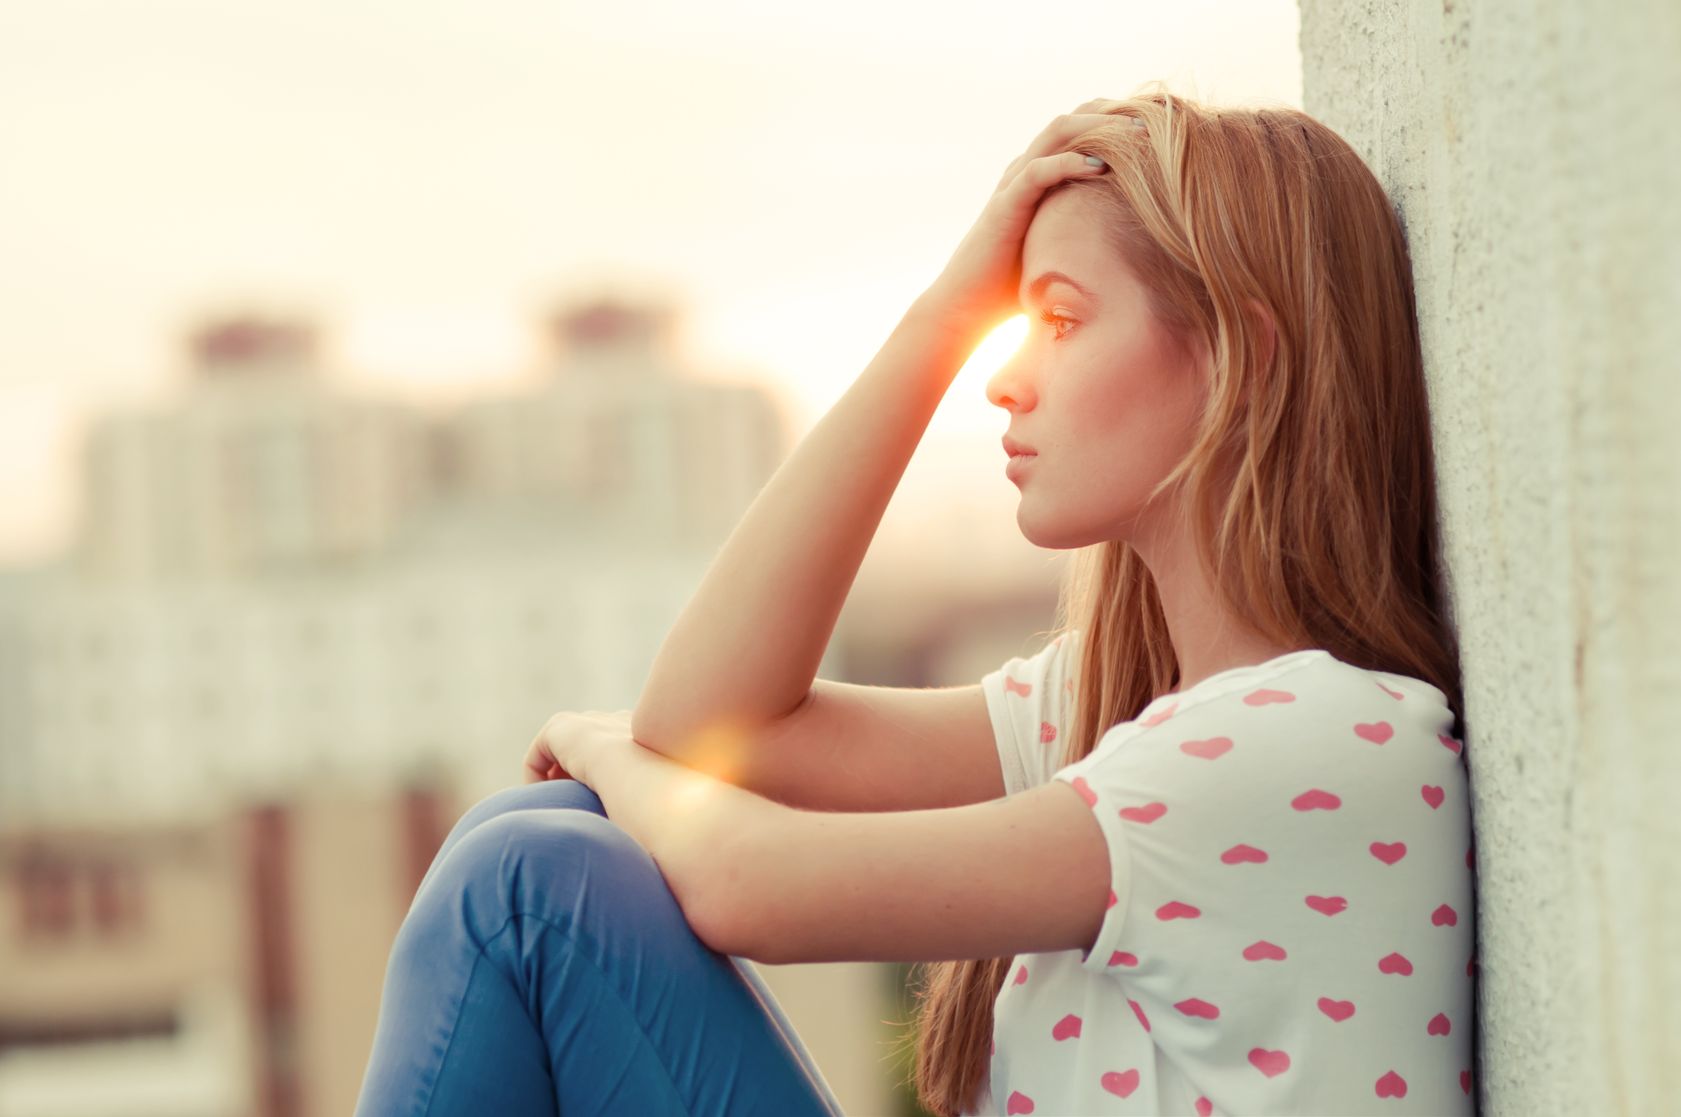 Sad teenage girl - risk factors for suicide